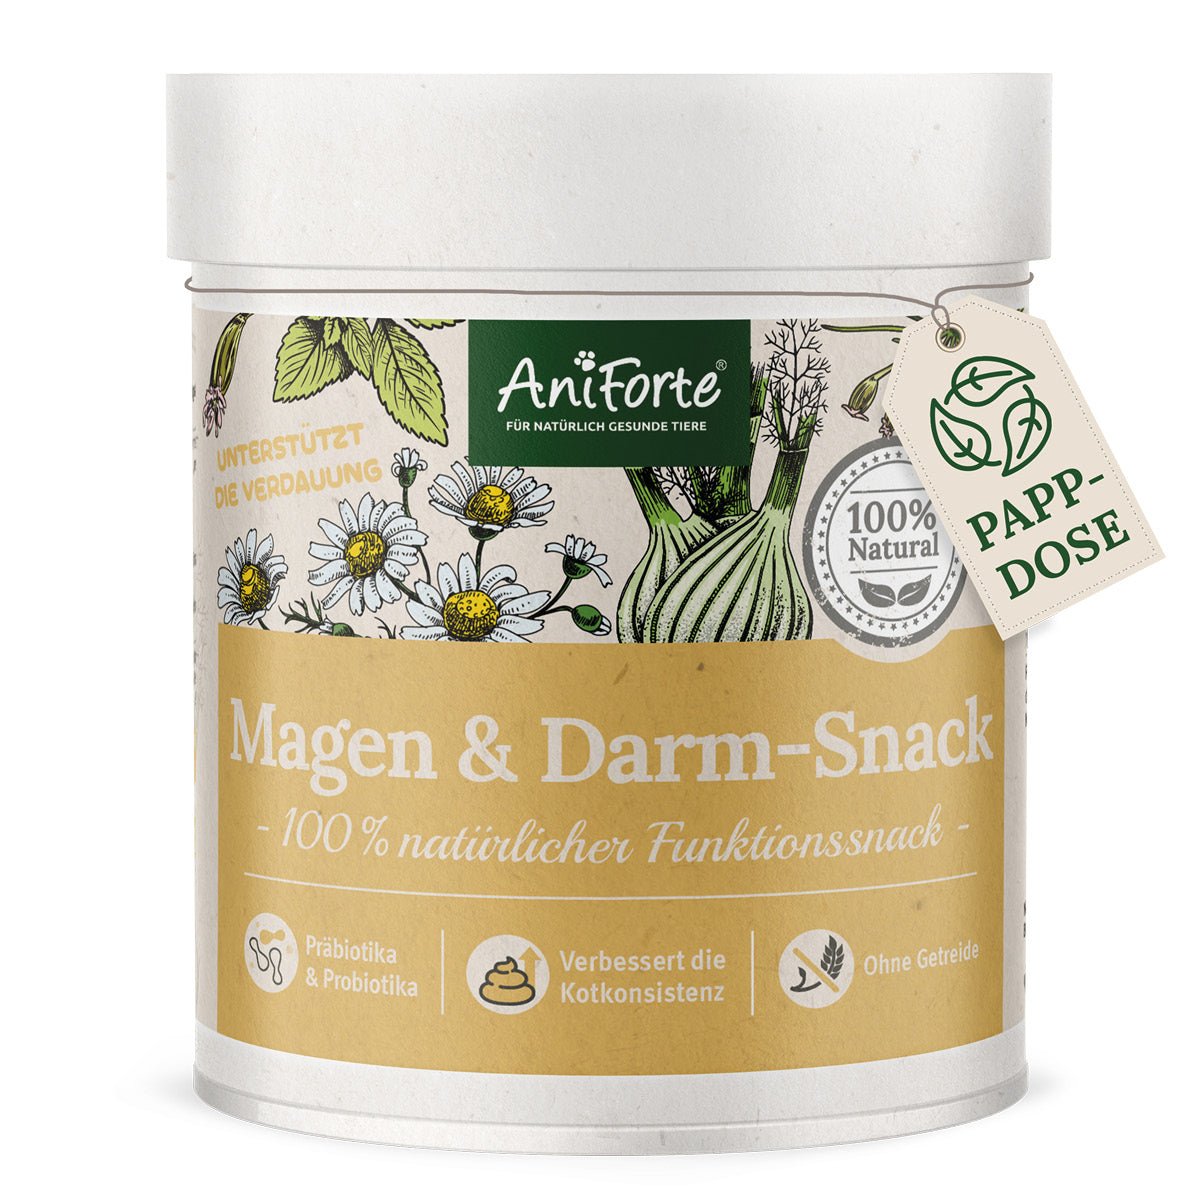 Magen & Darm-Snack von AniForte